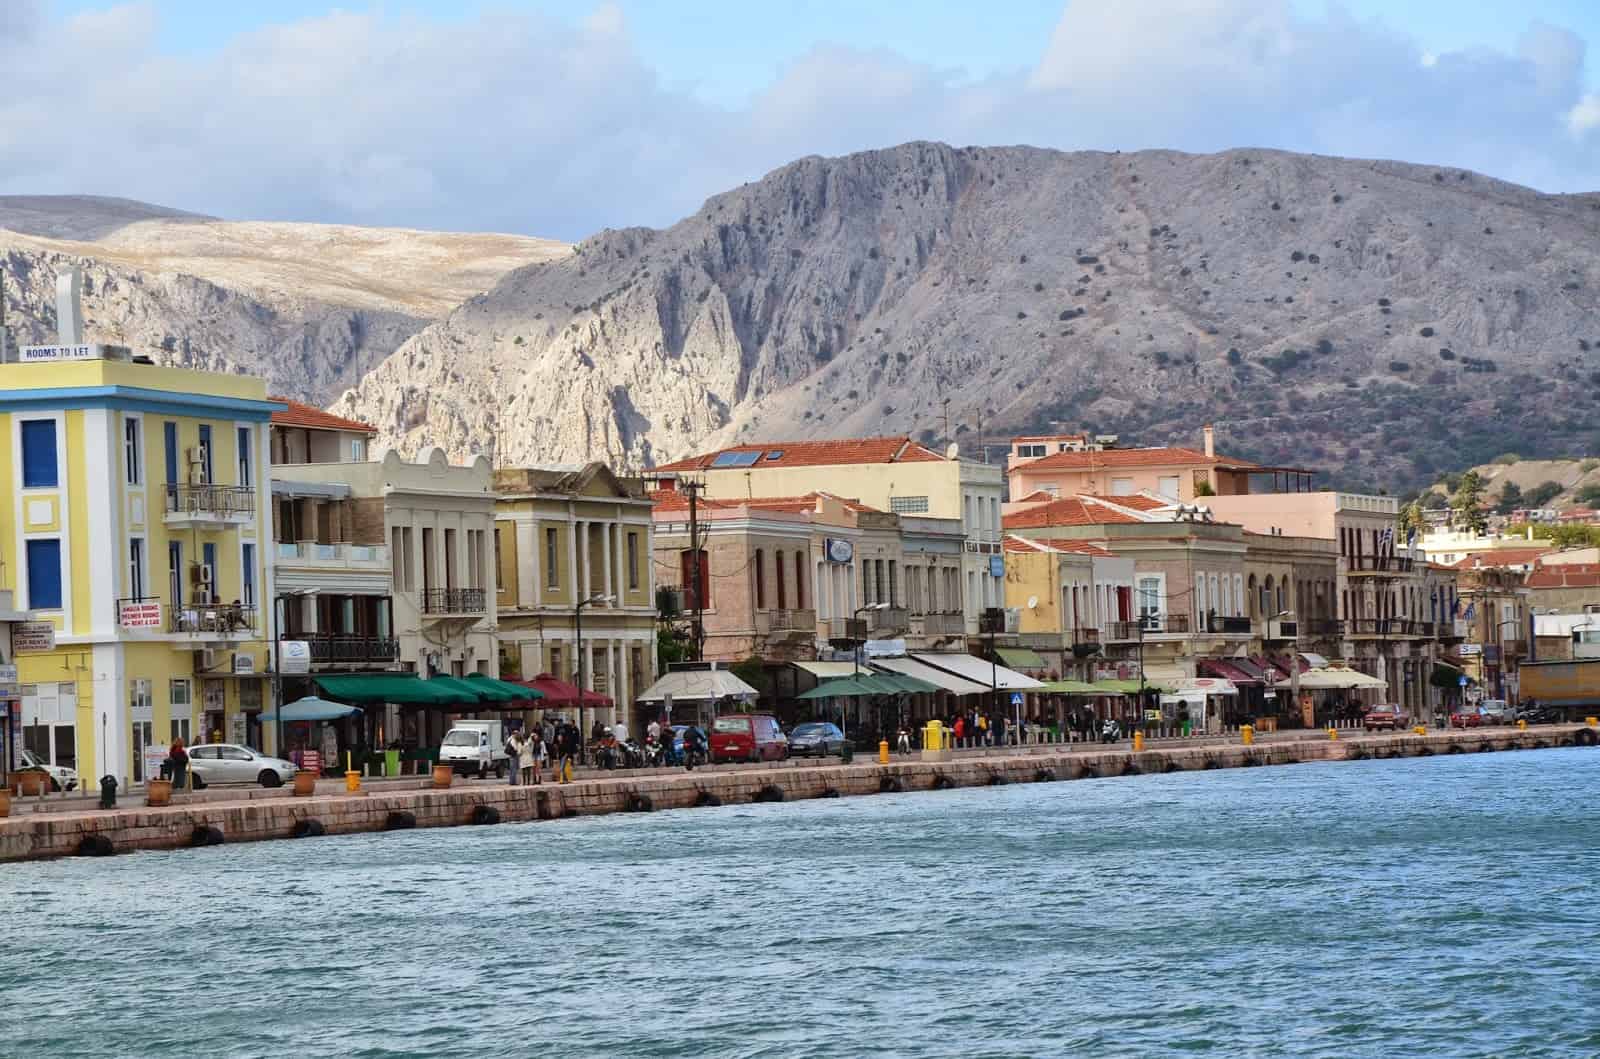 Harbor in Chora, Chios, Greece